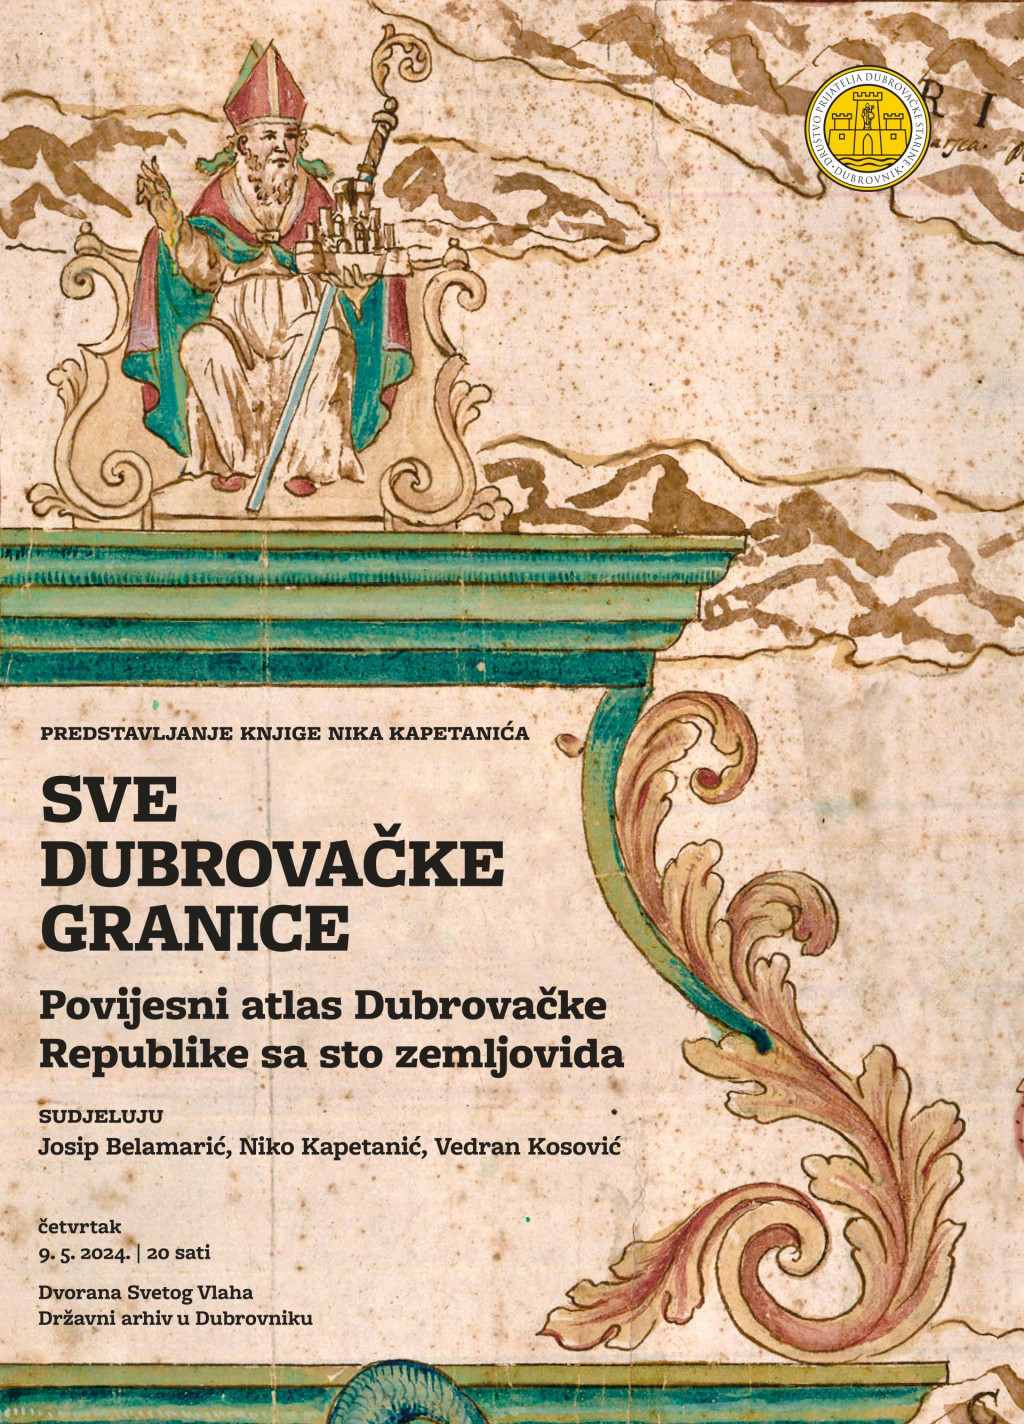 &lt;p&gt;Sve dubrovačke granice - povijesni atlas s više od sto kartografskih prikaza promjena granica Dubrovačke Republike&lt;/p&gt;